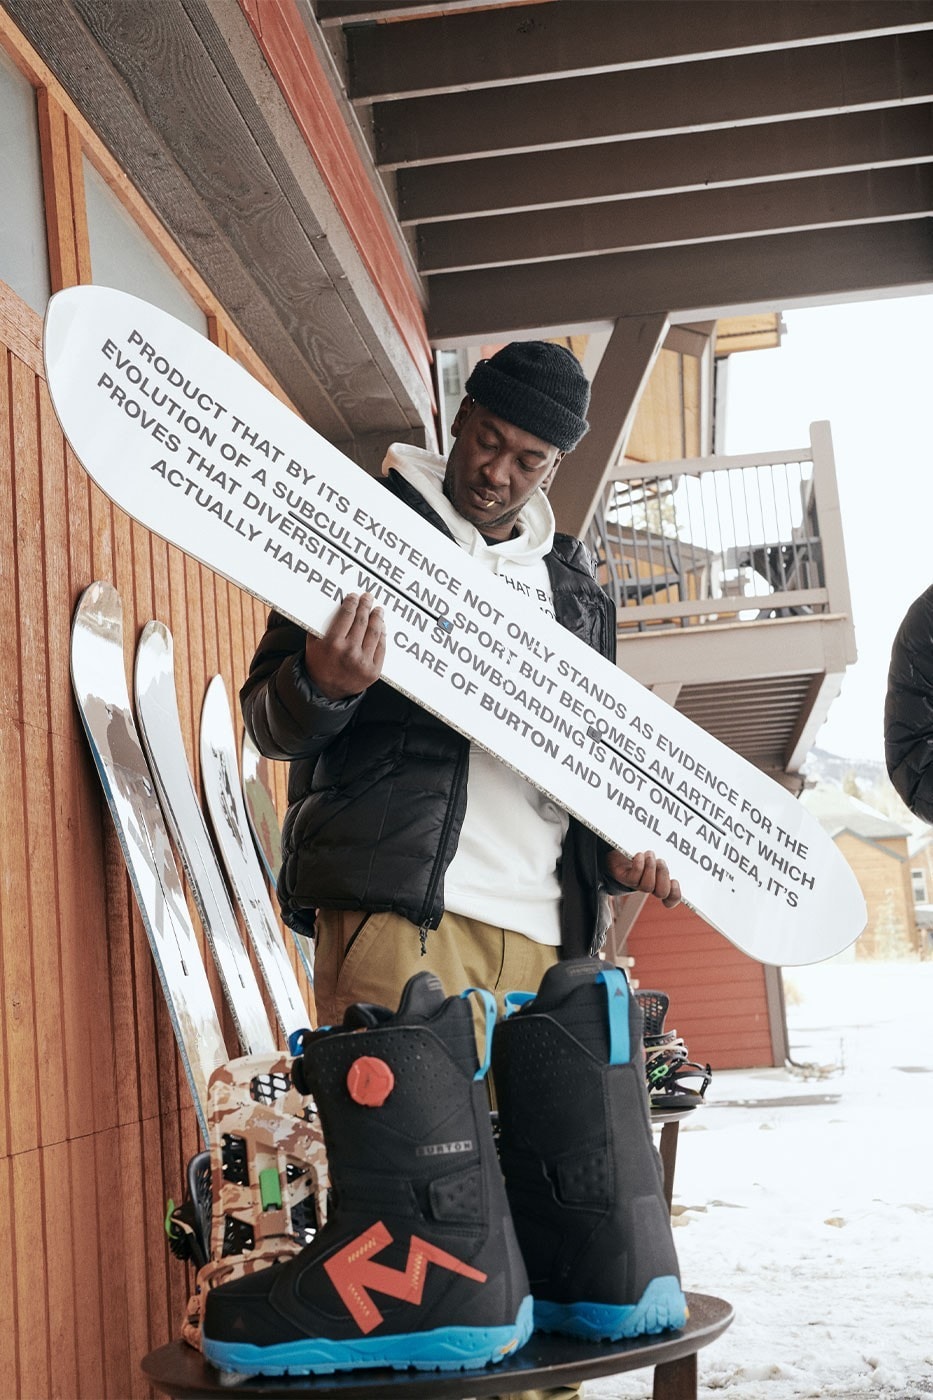 Burton x Virgil Abloh 最新聯名滑雪裝備系列正式登场